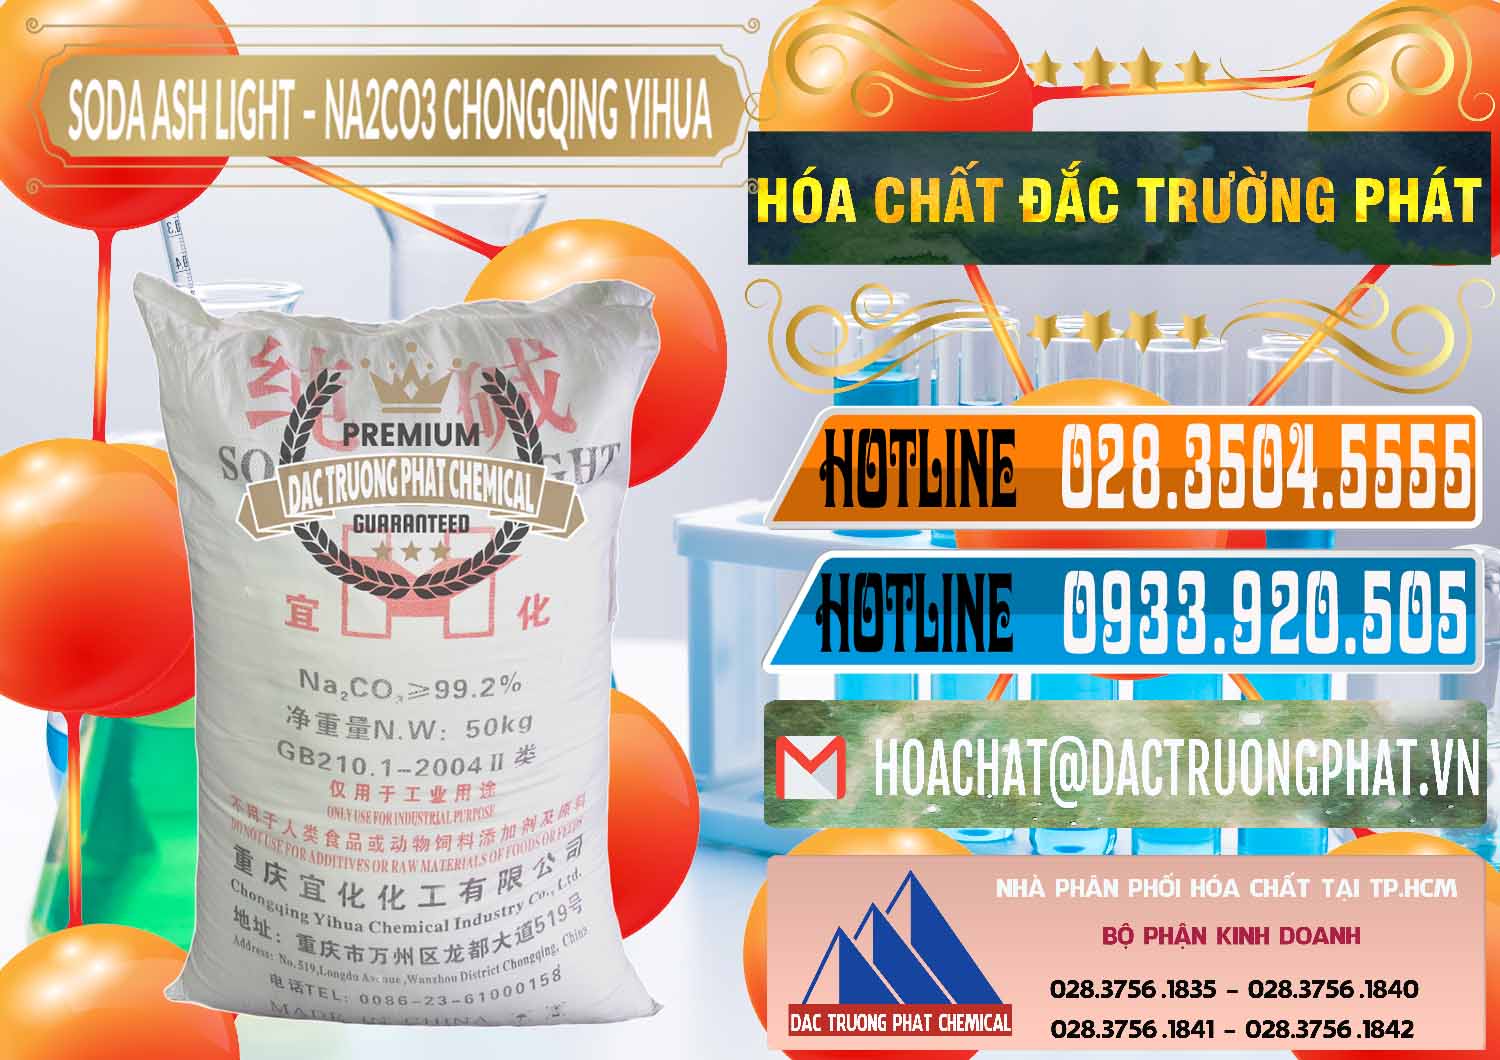 Chuyên cung cấp và bán Soda Ash Light - NA2CO3 Chongqing Yihua Trung Quốc China - 0129 - Nơi cung cấp _ phân phối hóa chất tại TP.HCM - stmp.net